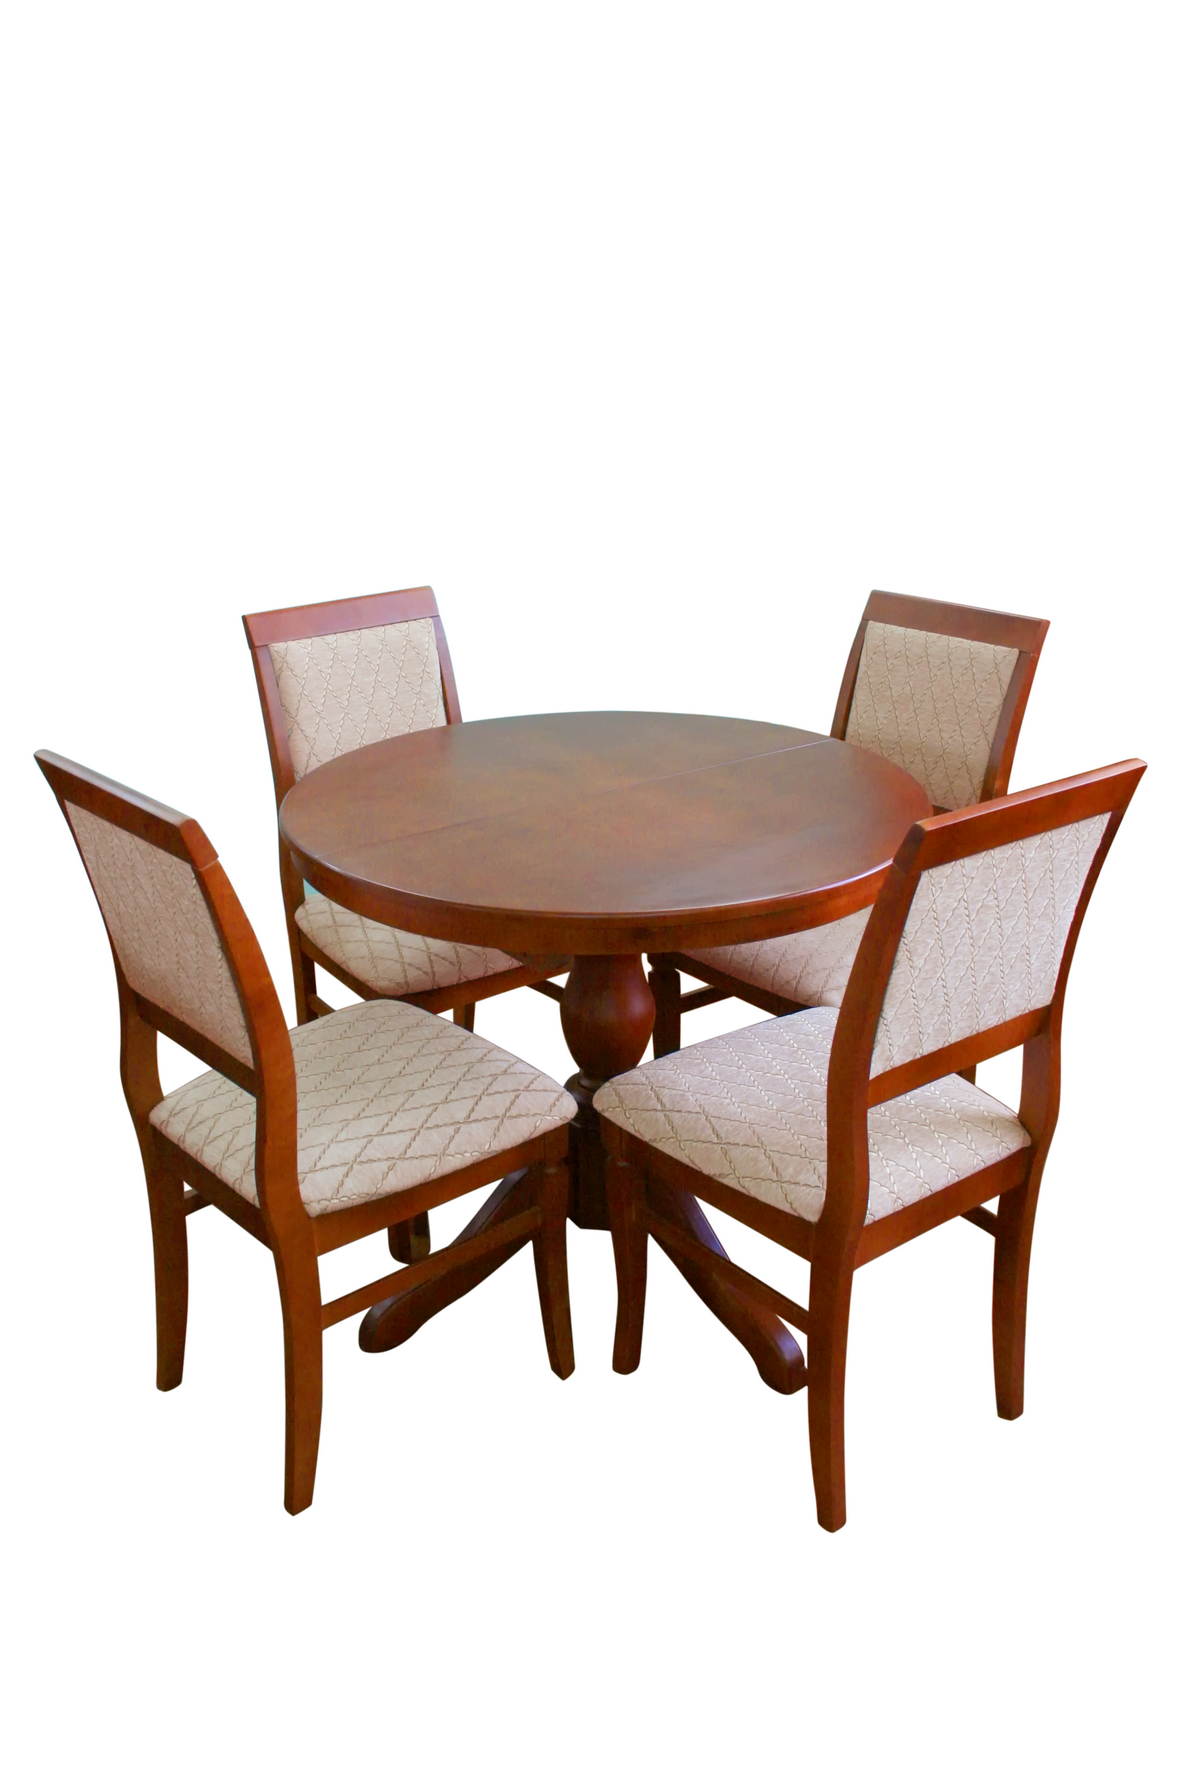 Столы и стулья от производителя. Стол обеденный Браво массив фабрика. Стол HNDT-4872 SWC (MK-1105-HG) темный орех. Стулья из массива Браво мебель. Браво мебель столы обеденные.